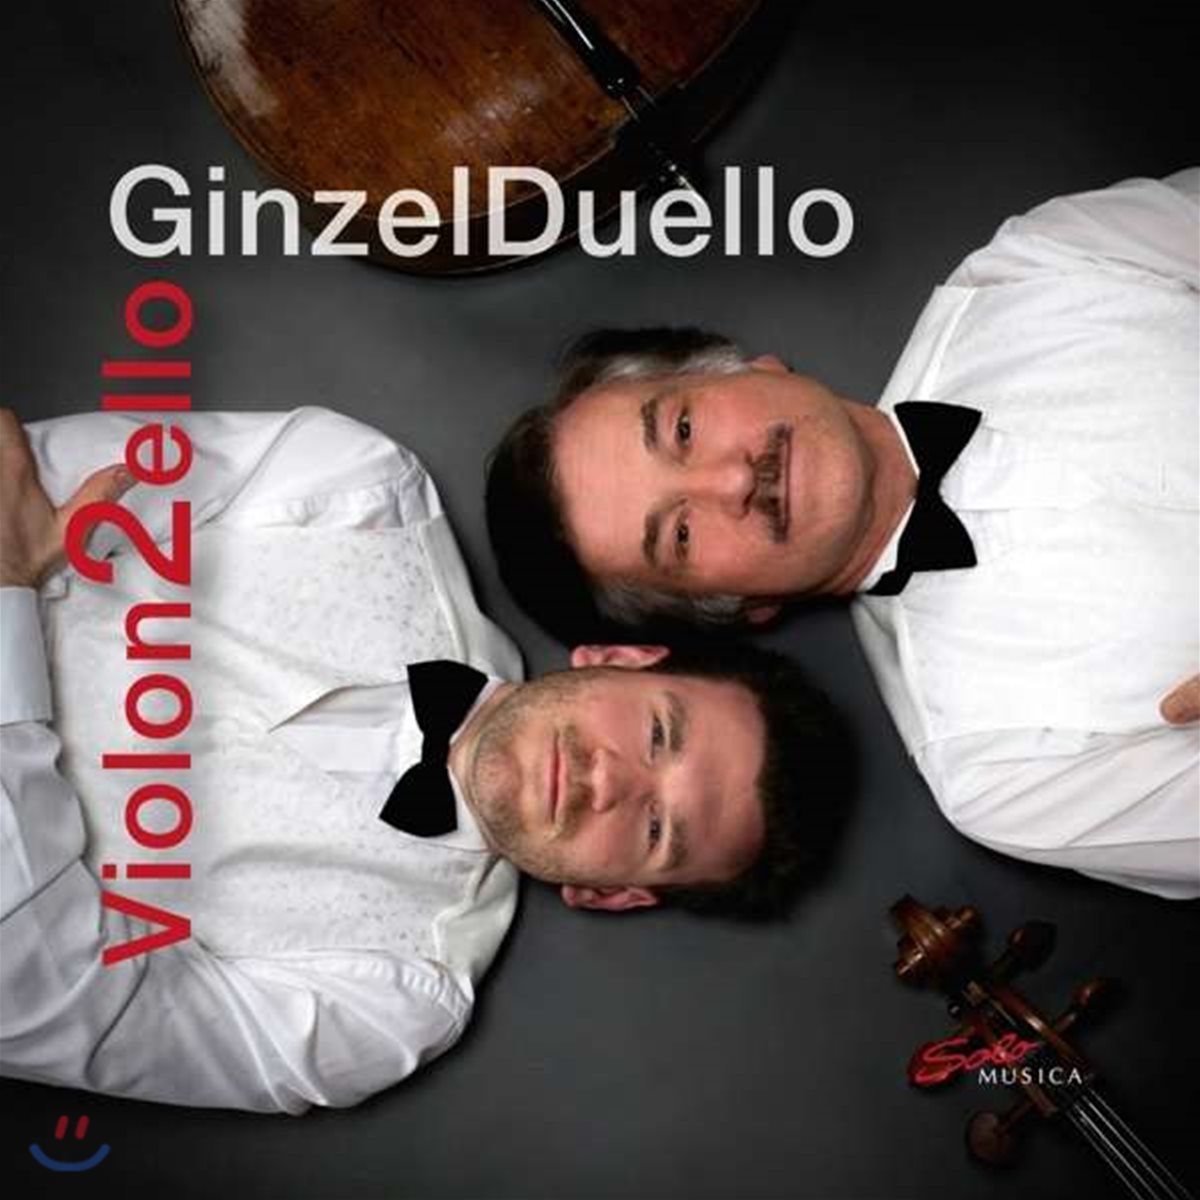 GinzelDuello 두 대의 첼로로 연주하는 클래식 - 바흐 / 쇼팽 / 롬베르크 / 오펜바흐 외 (Violon2ello)